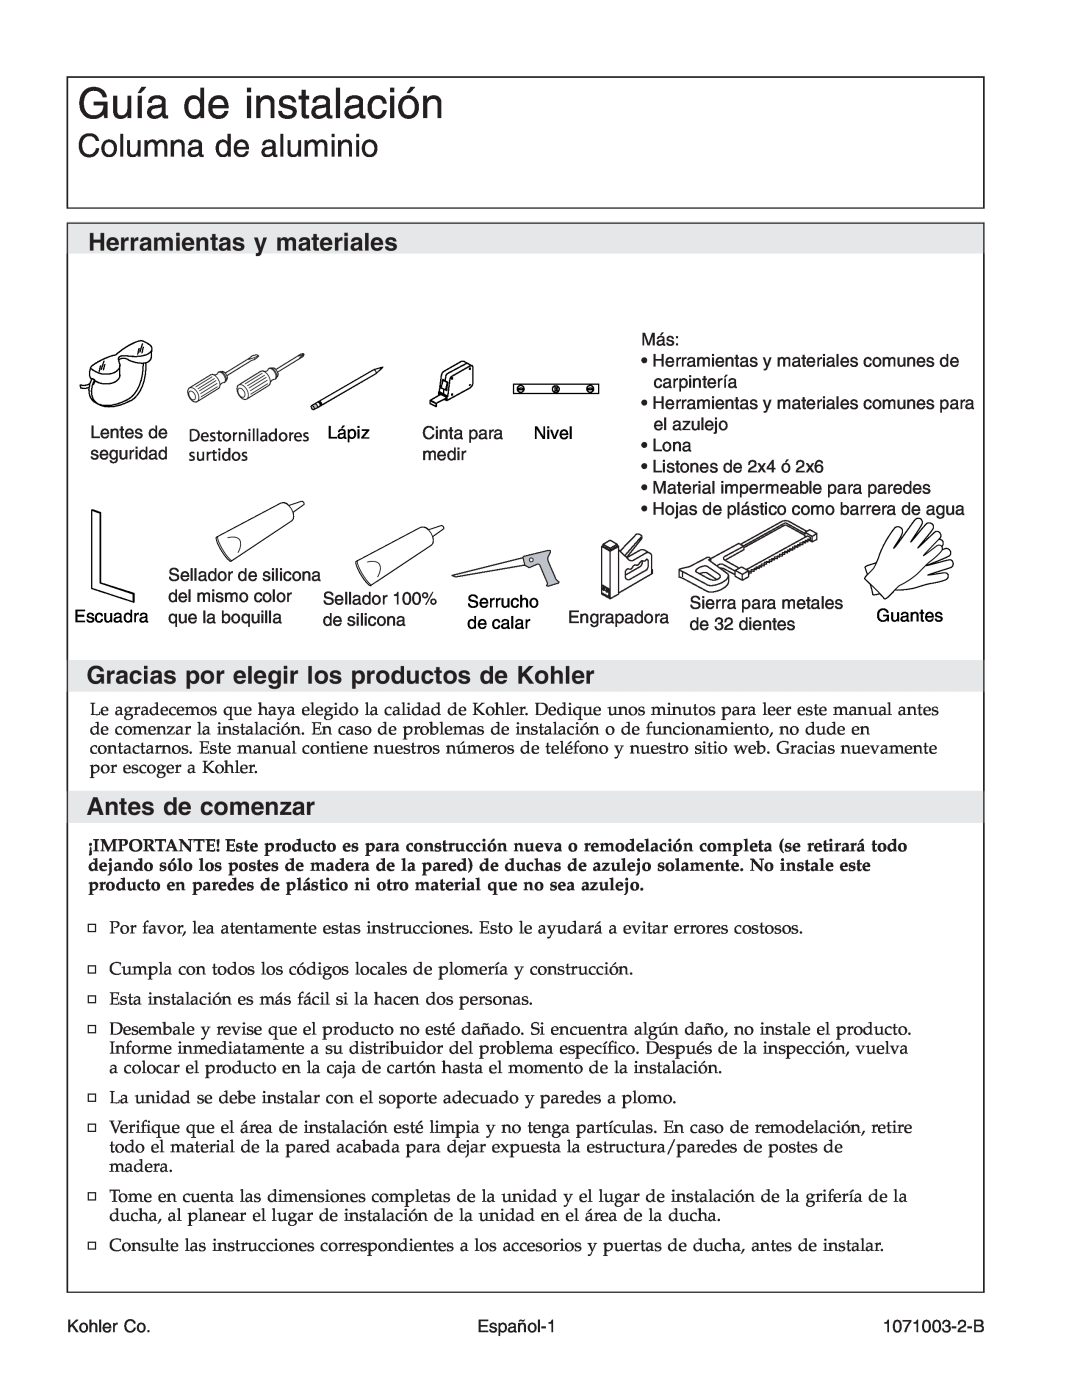 Kohler 1071003-2-B manual Guía de instalación, Columna de aluminio, Herramientas y materiales, Antes de comenzar, surtidos 